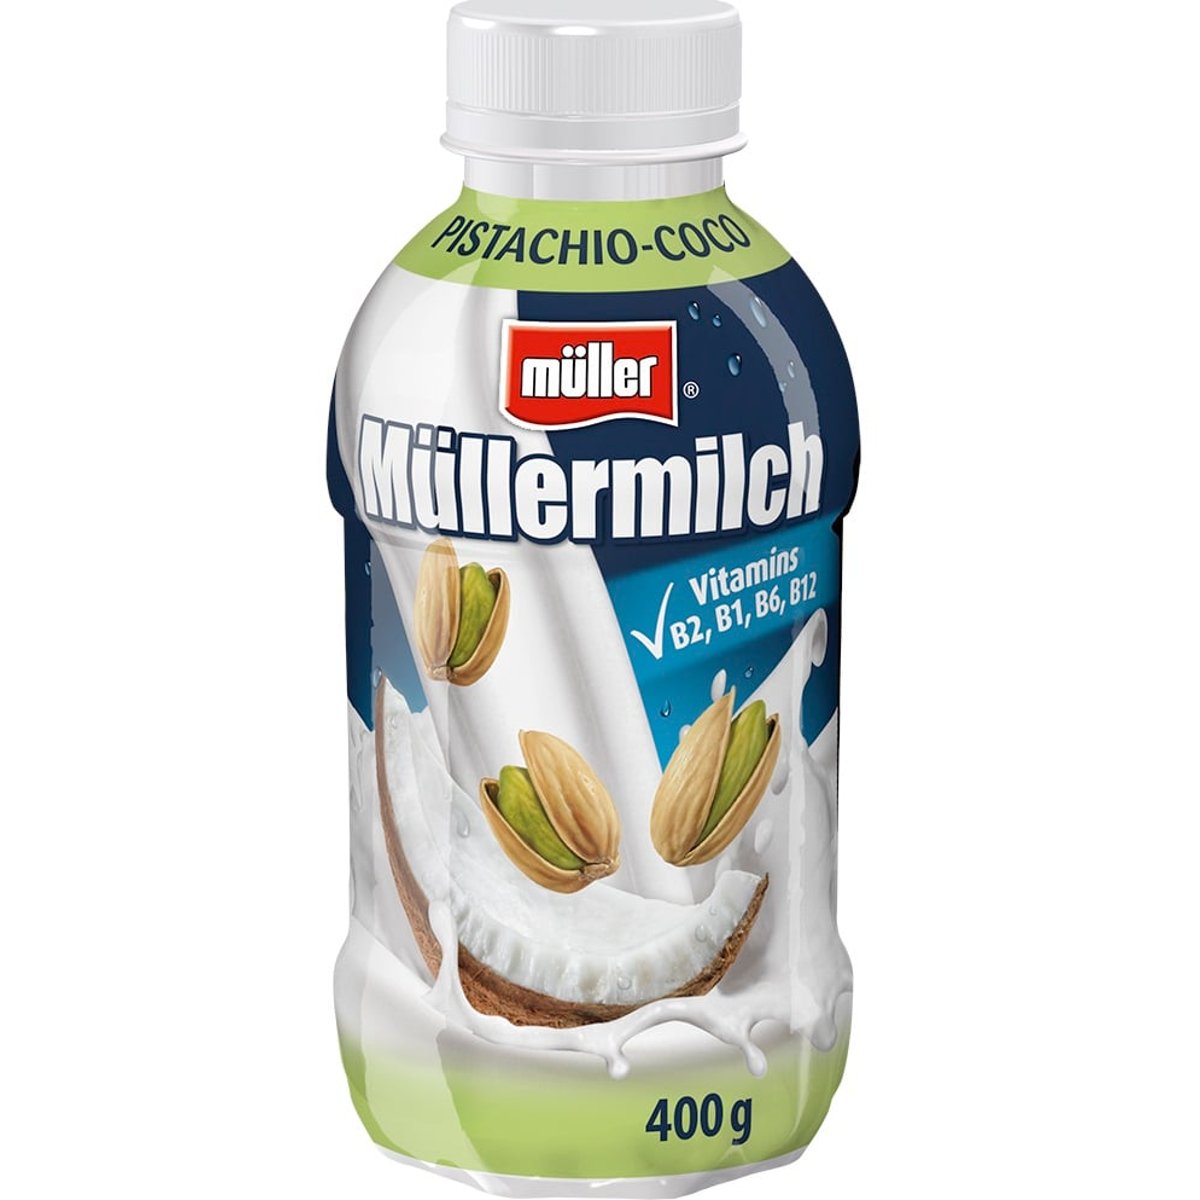 Müllermilch Mléčný nápoj s pistáciovo-kokosovou příchutí